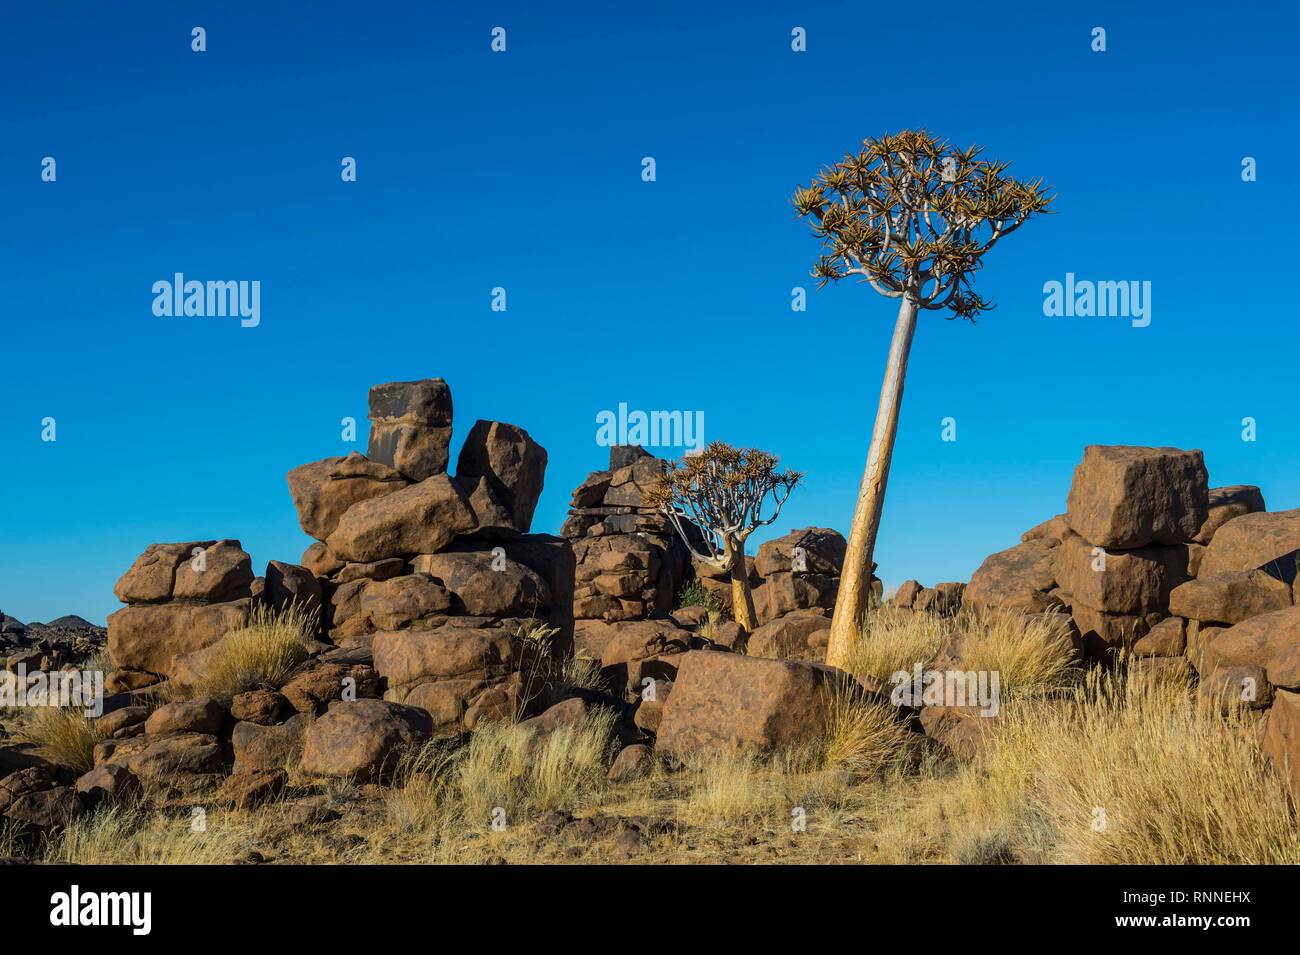 El carcaj tree (Aloe dichotoma) entre extrañas formaciones rocosas gigantes, Infantil, Ketmanshoop, Namibia Foto de stock